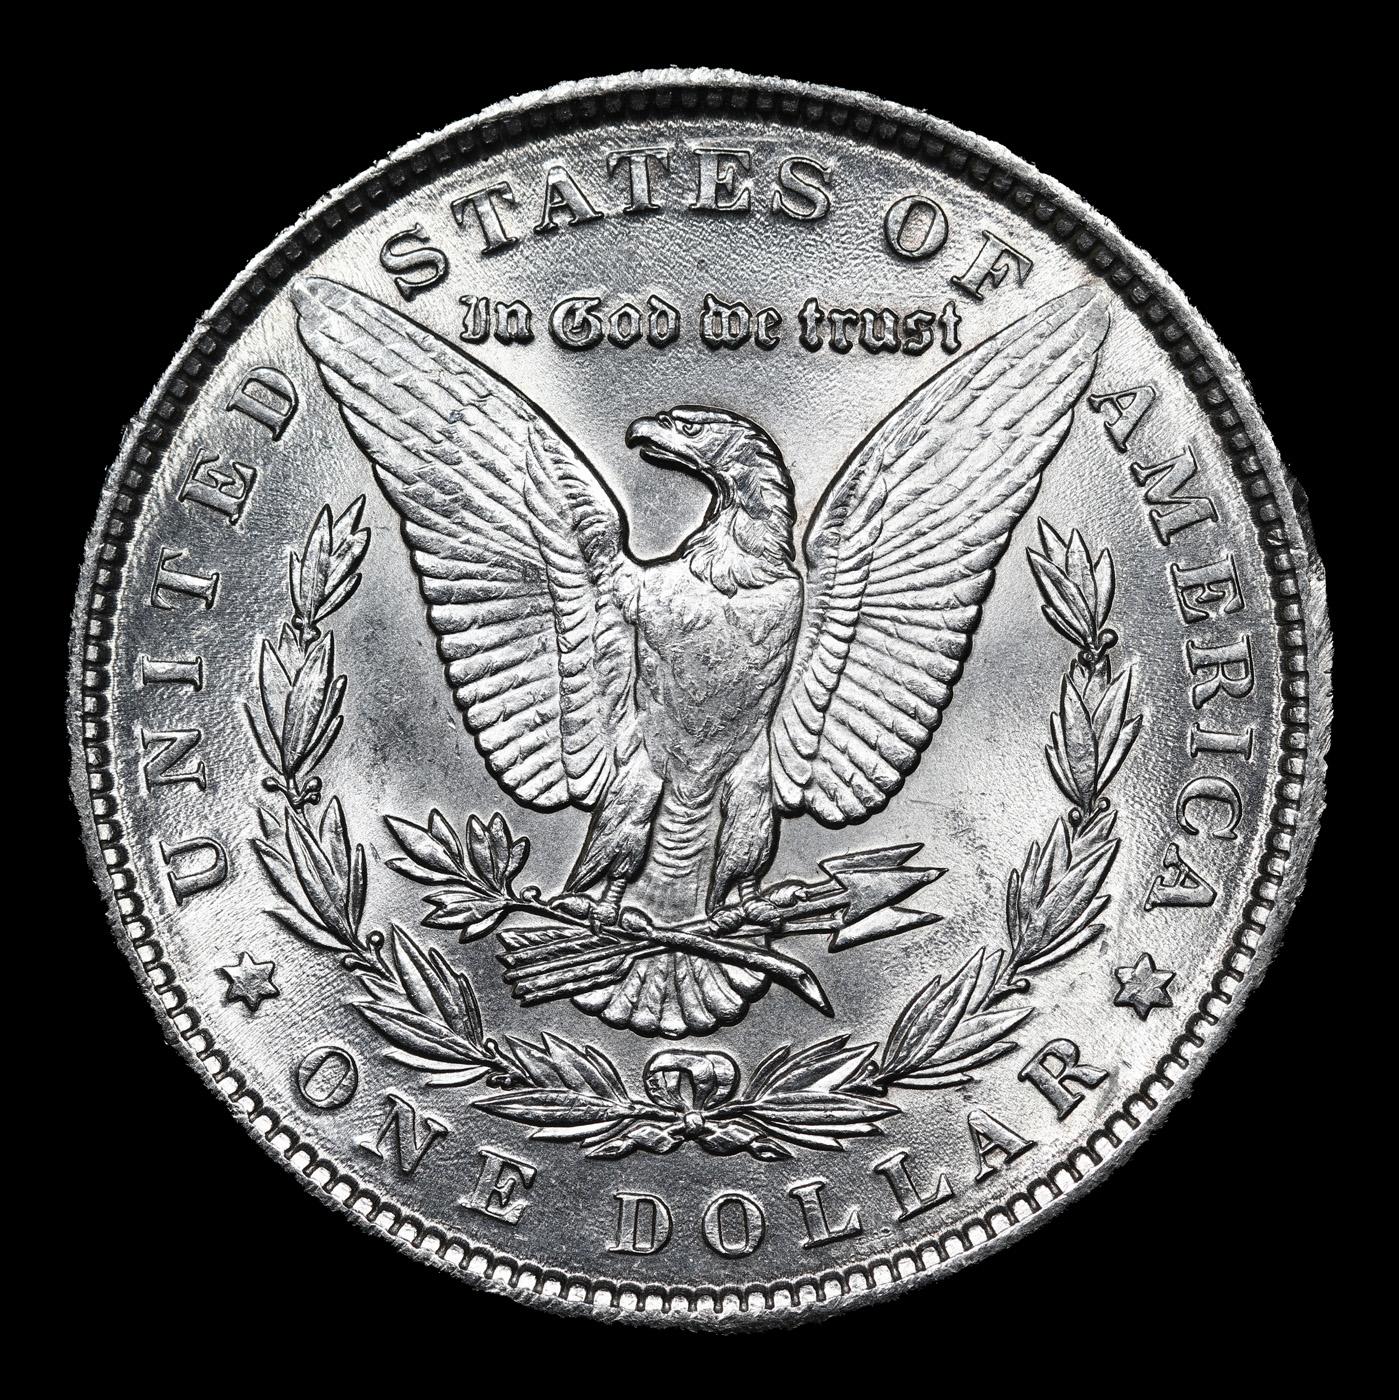 1889-p Morgan Dollar $1 Grades GEM Unc